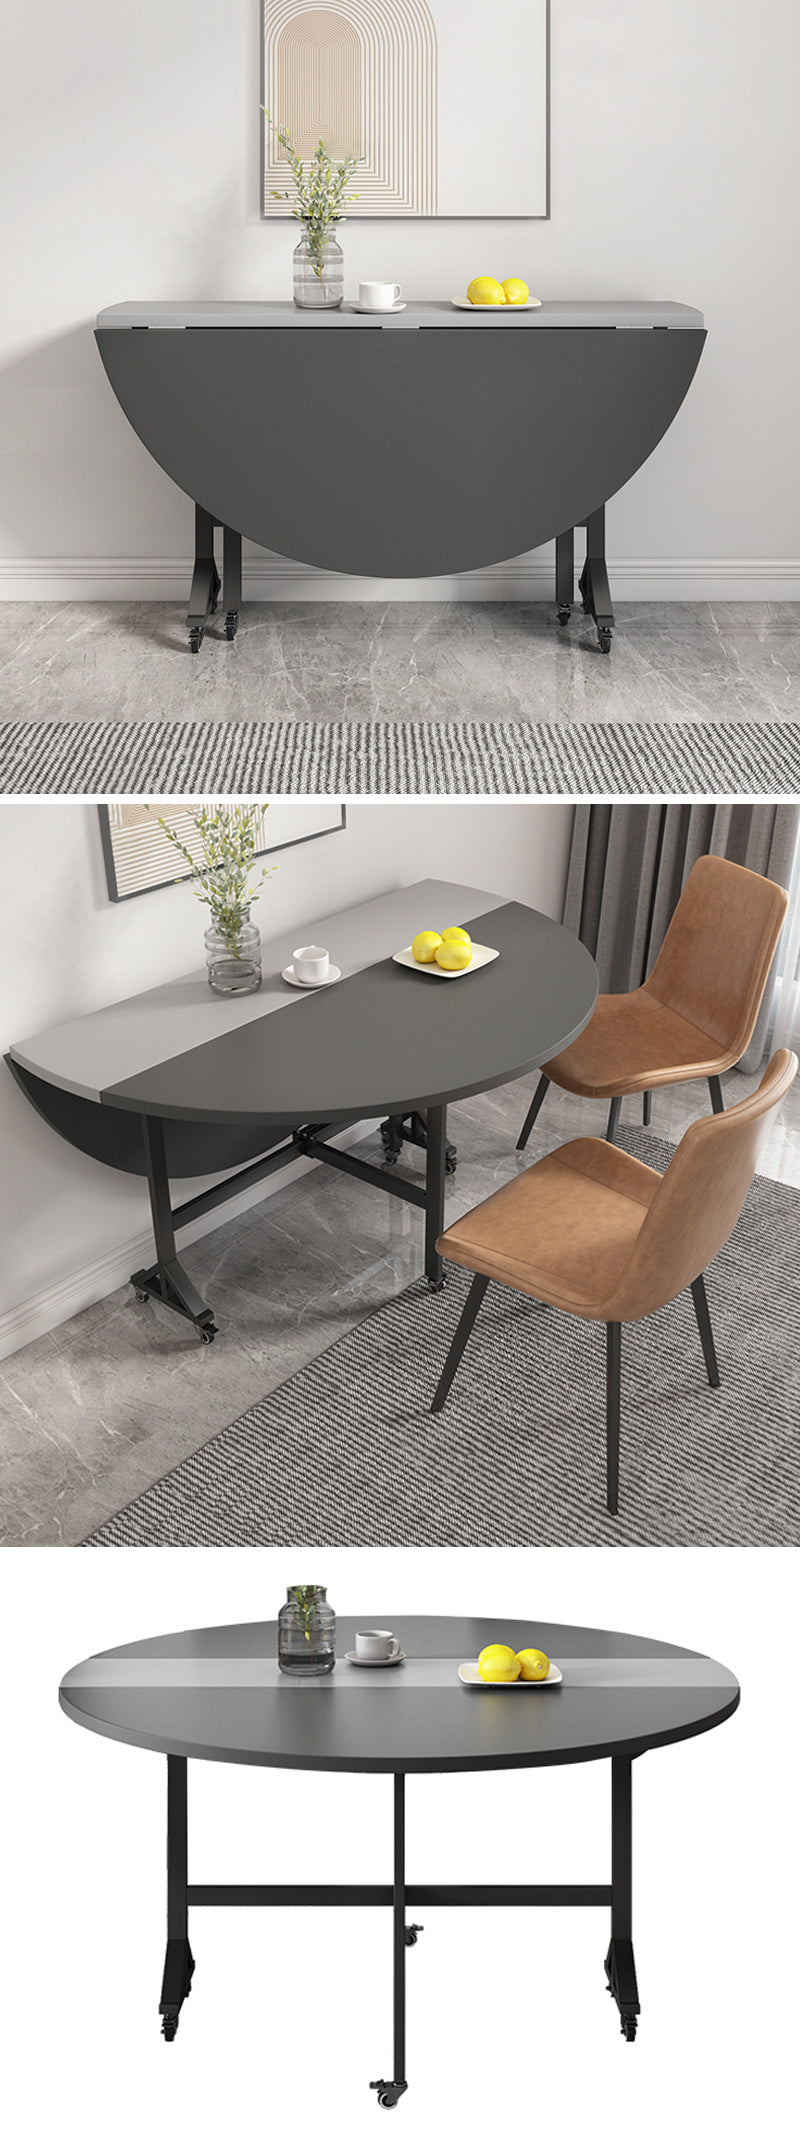 【ダイニングテーブル】シンプル 円型 伸長式 ダイニングテーブル 椅子セット 120*120*76 ※伸縮機能が叶え、使用シーンやお部屋のレイアウトに合わせて形を選べます。